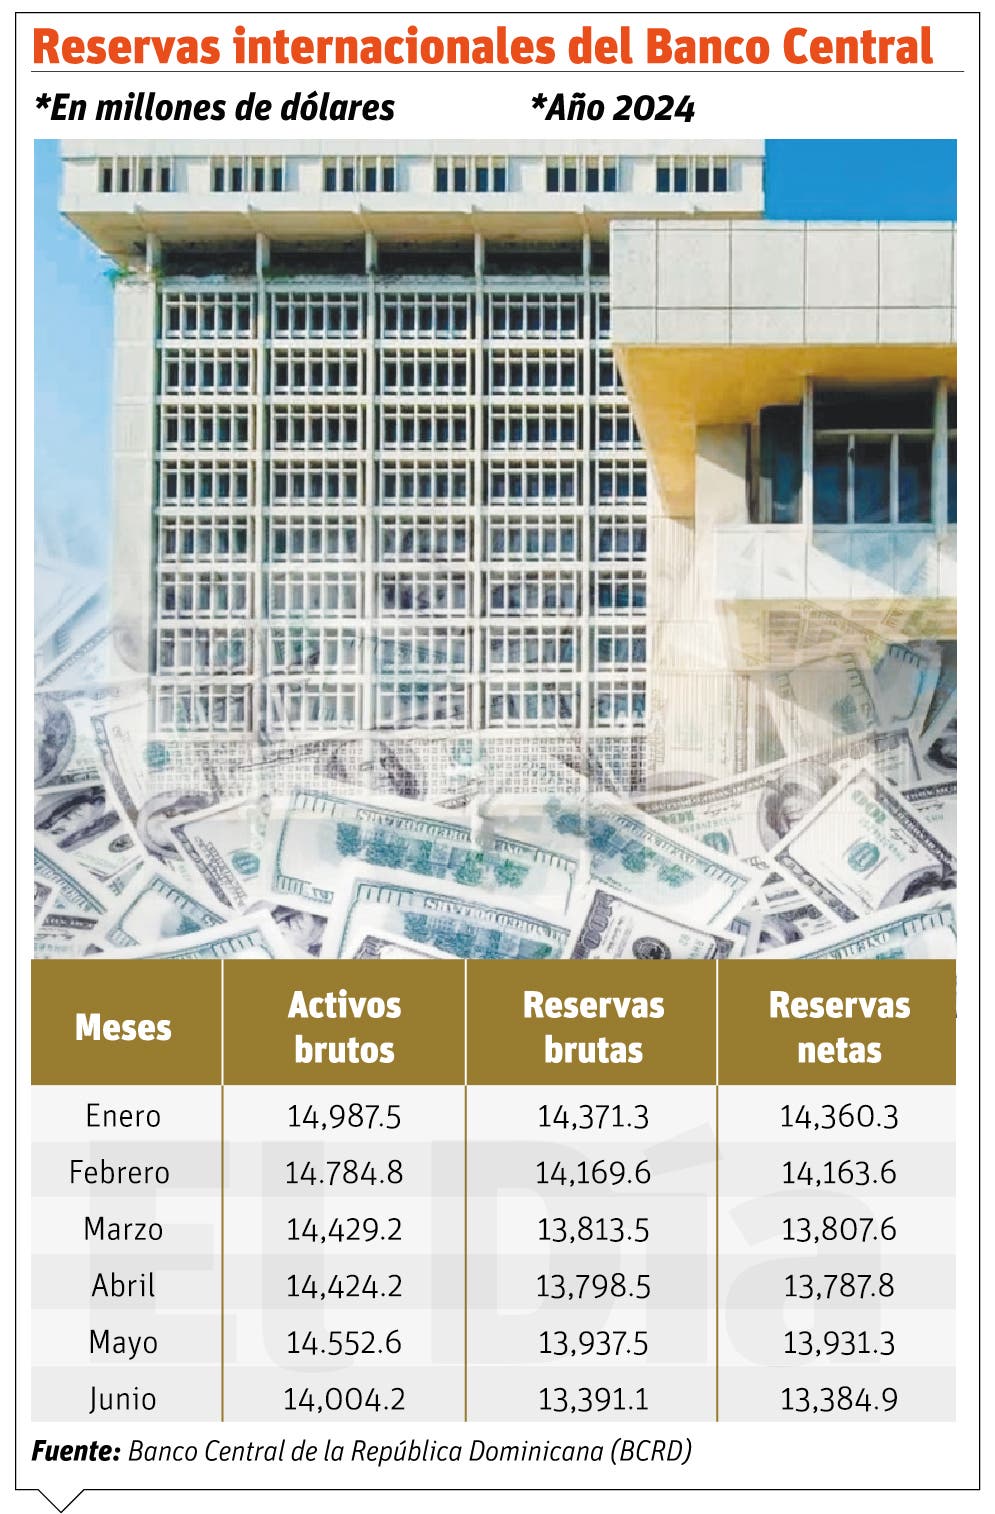 La reducción en las reservas del Banco Central no afecta la economía